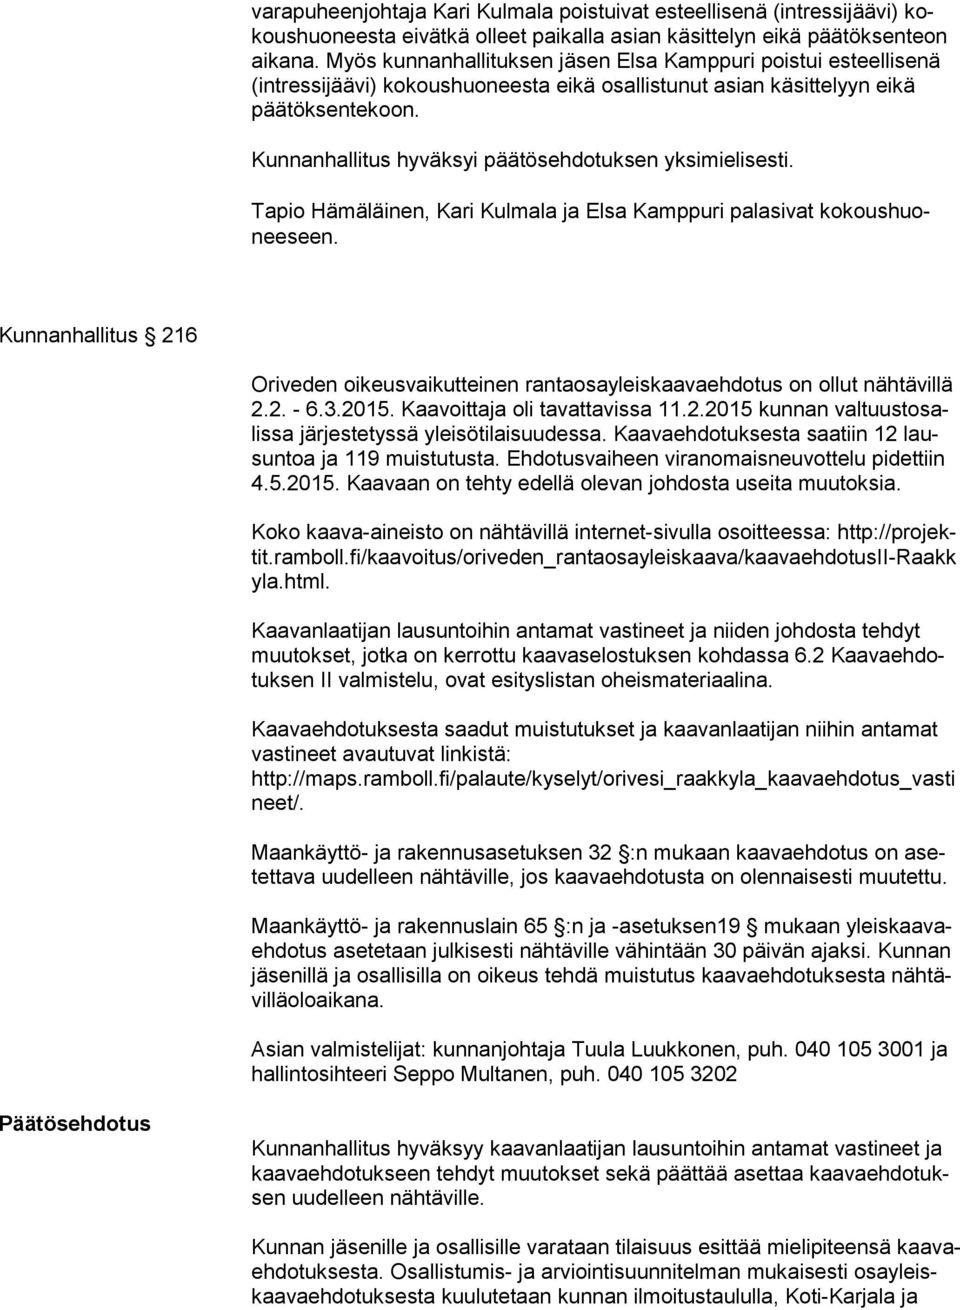 Tapio Hämäläinen, Kari Kulmala ja Elsa Kamppuri palasivat ko kous huonee seen. Kunnanhallitus 216 Oriveden oikeusvaikutteinen rantaosayleiskaavaehdotus on ollut nähtävillä 2.2. - 6.3.2015.